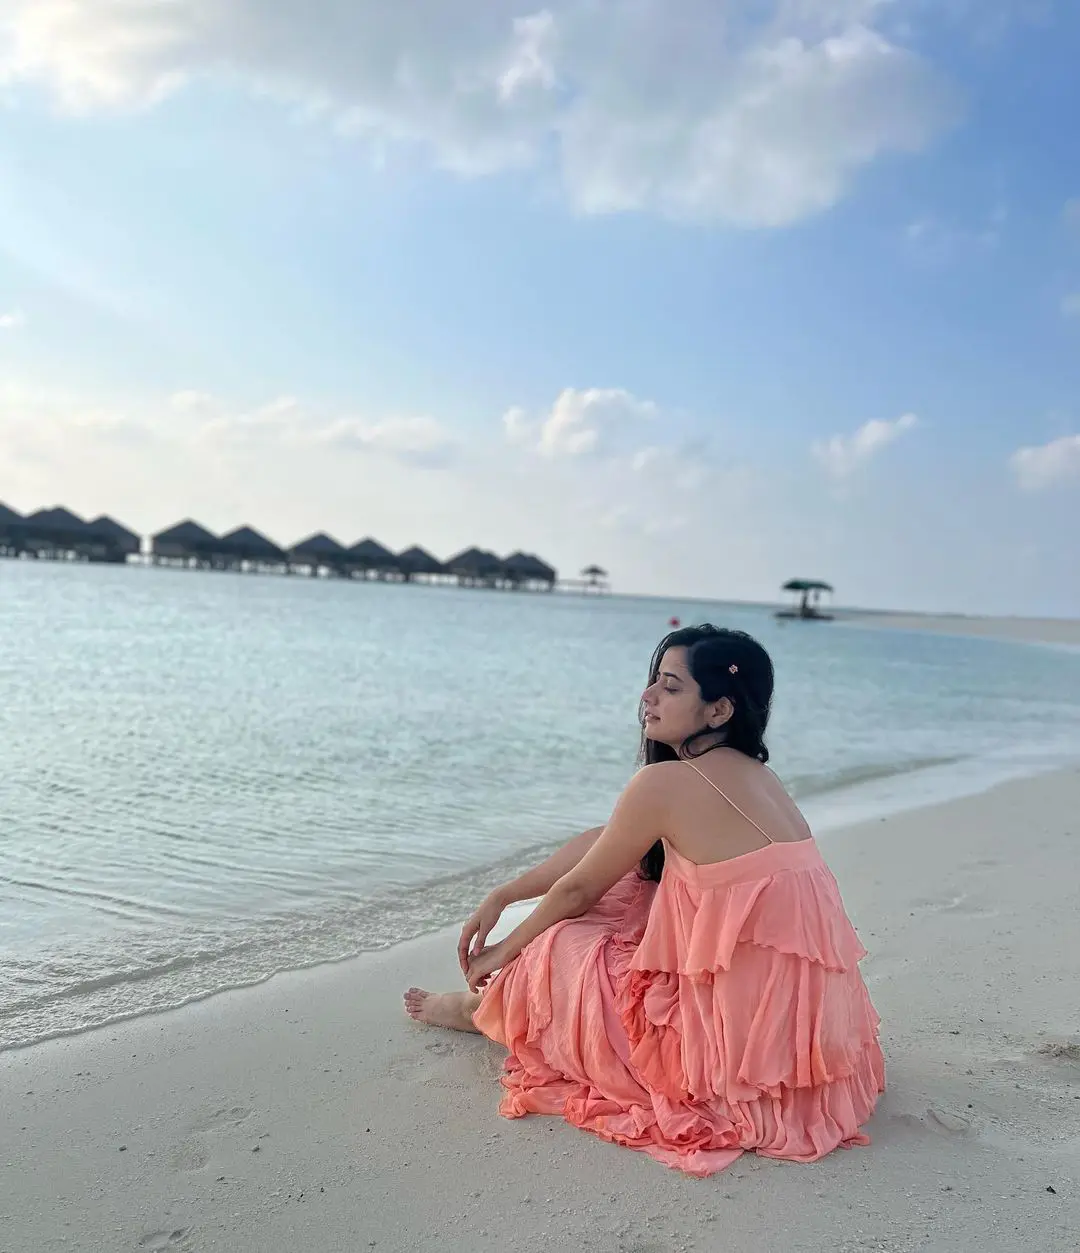 Ashika Ranganath enjoying vacation at Maldives